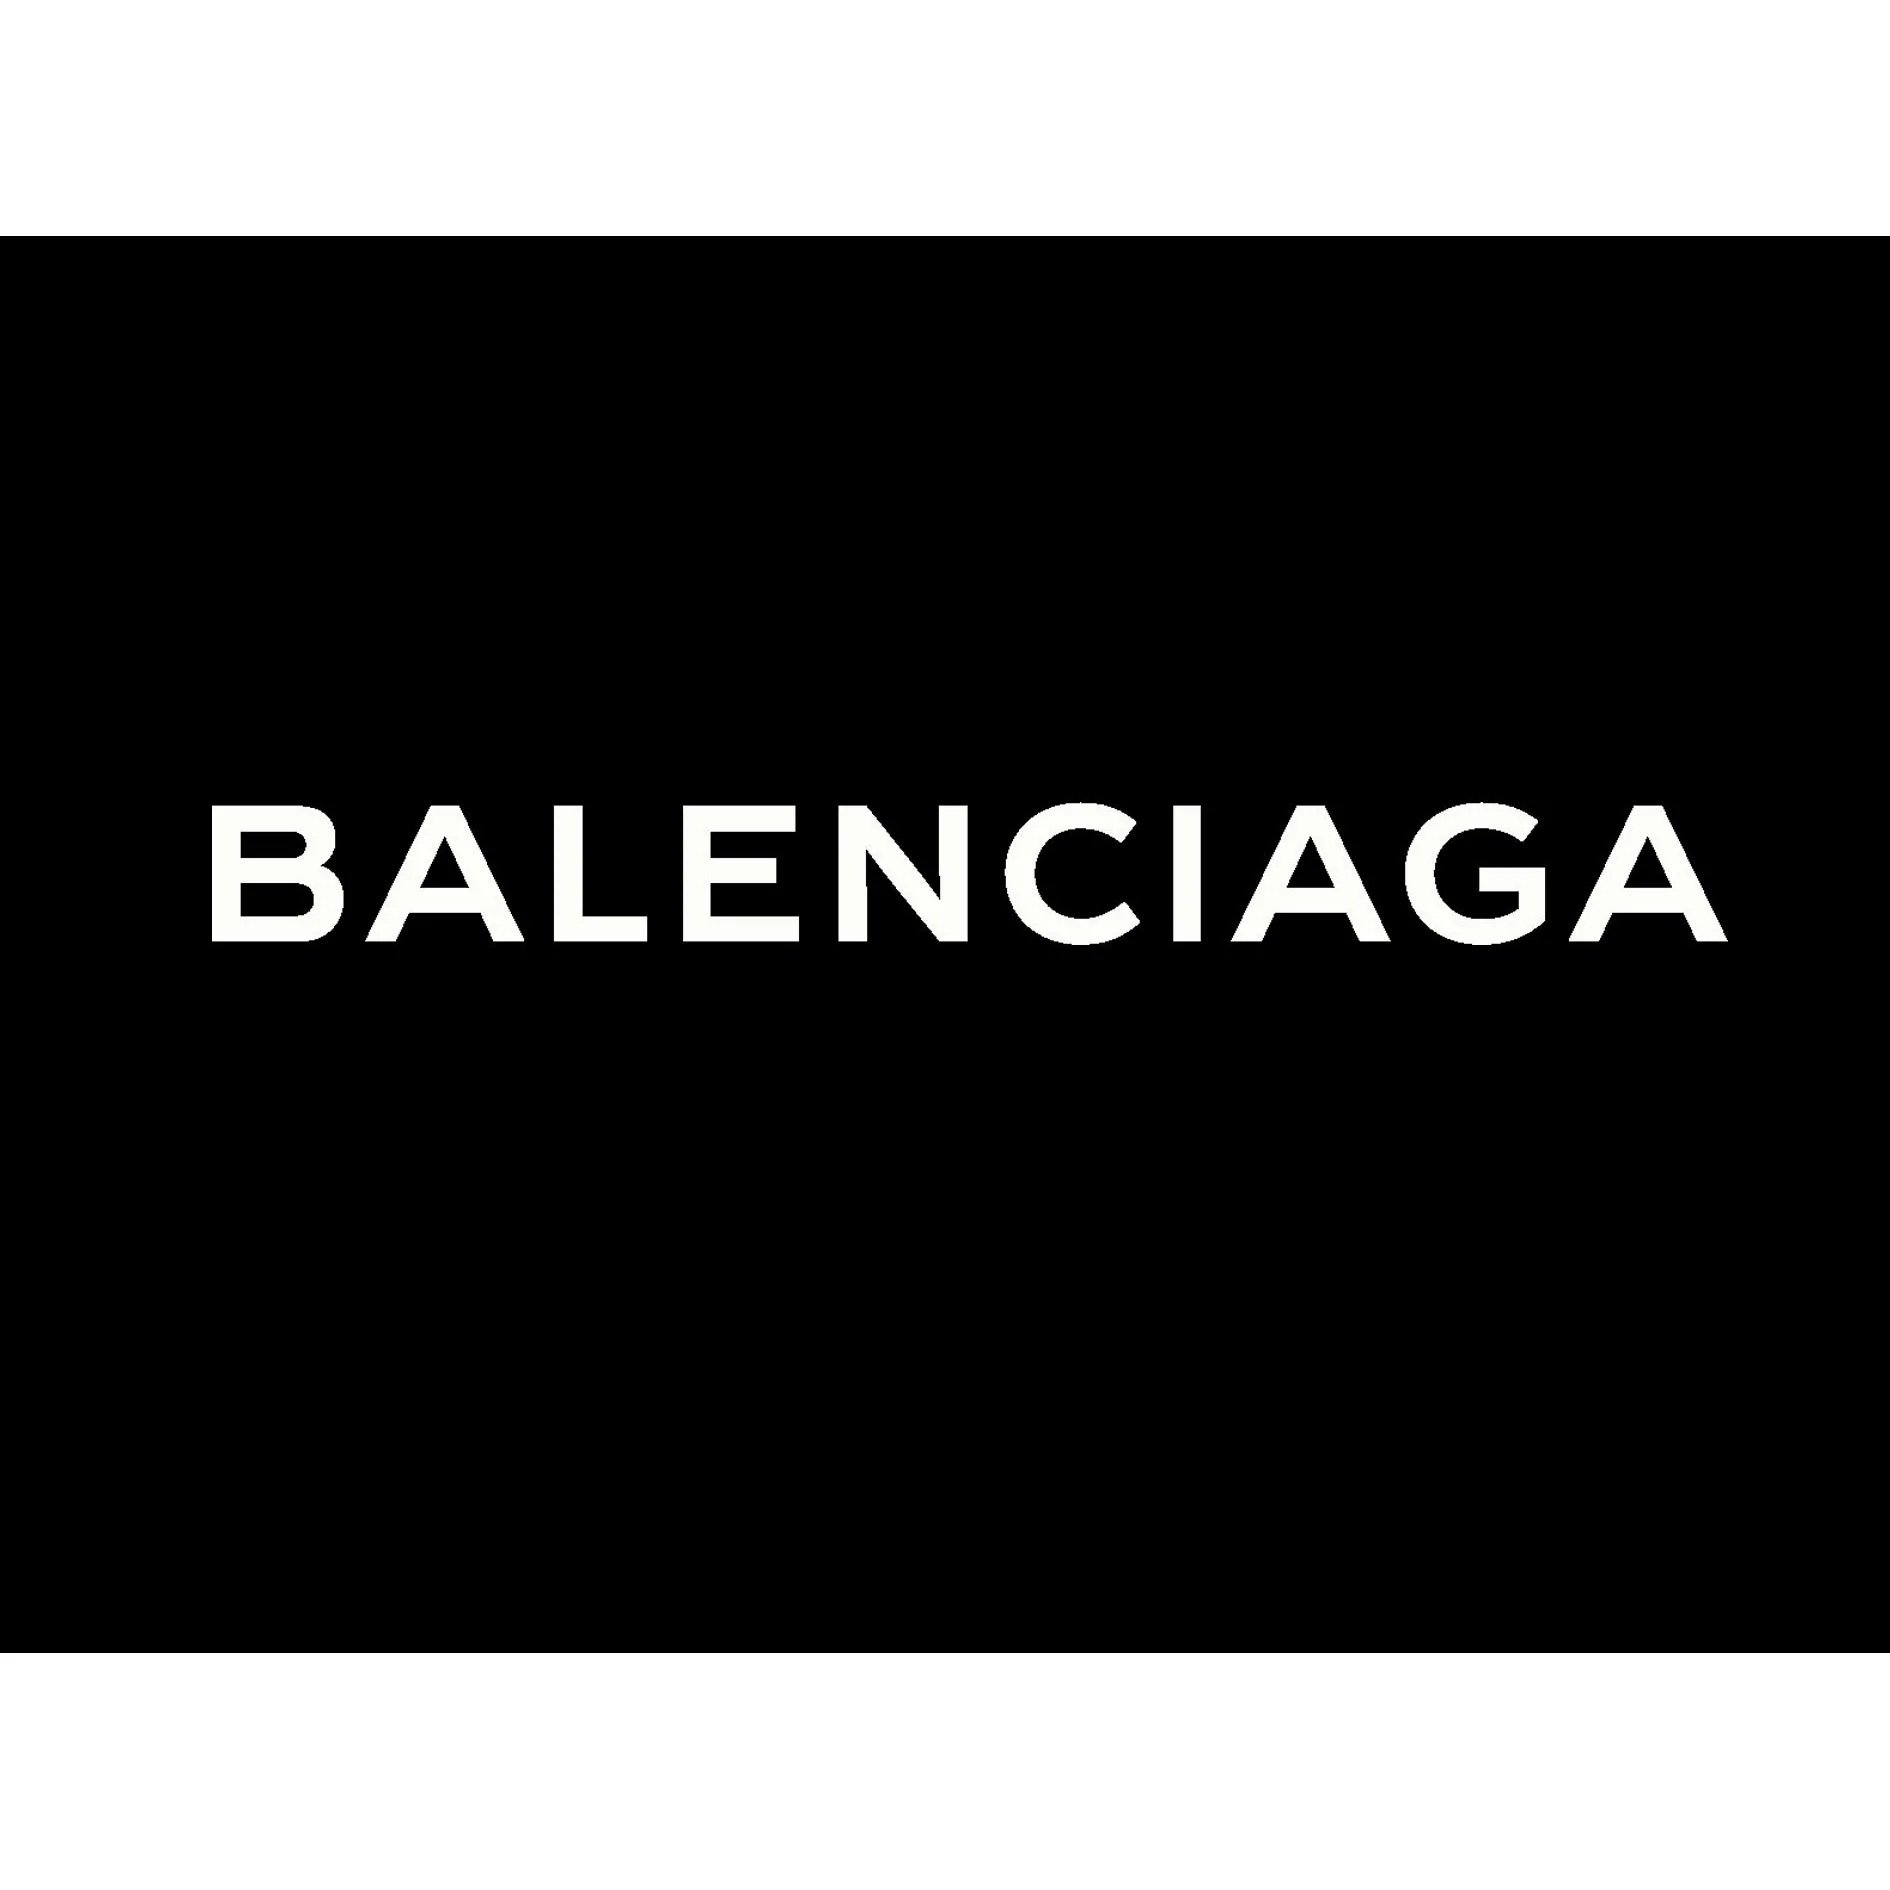 Balenciaga creative director apologizes for controversial ad campaign